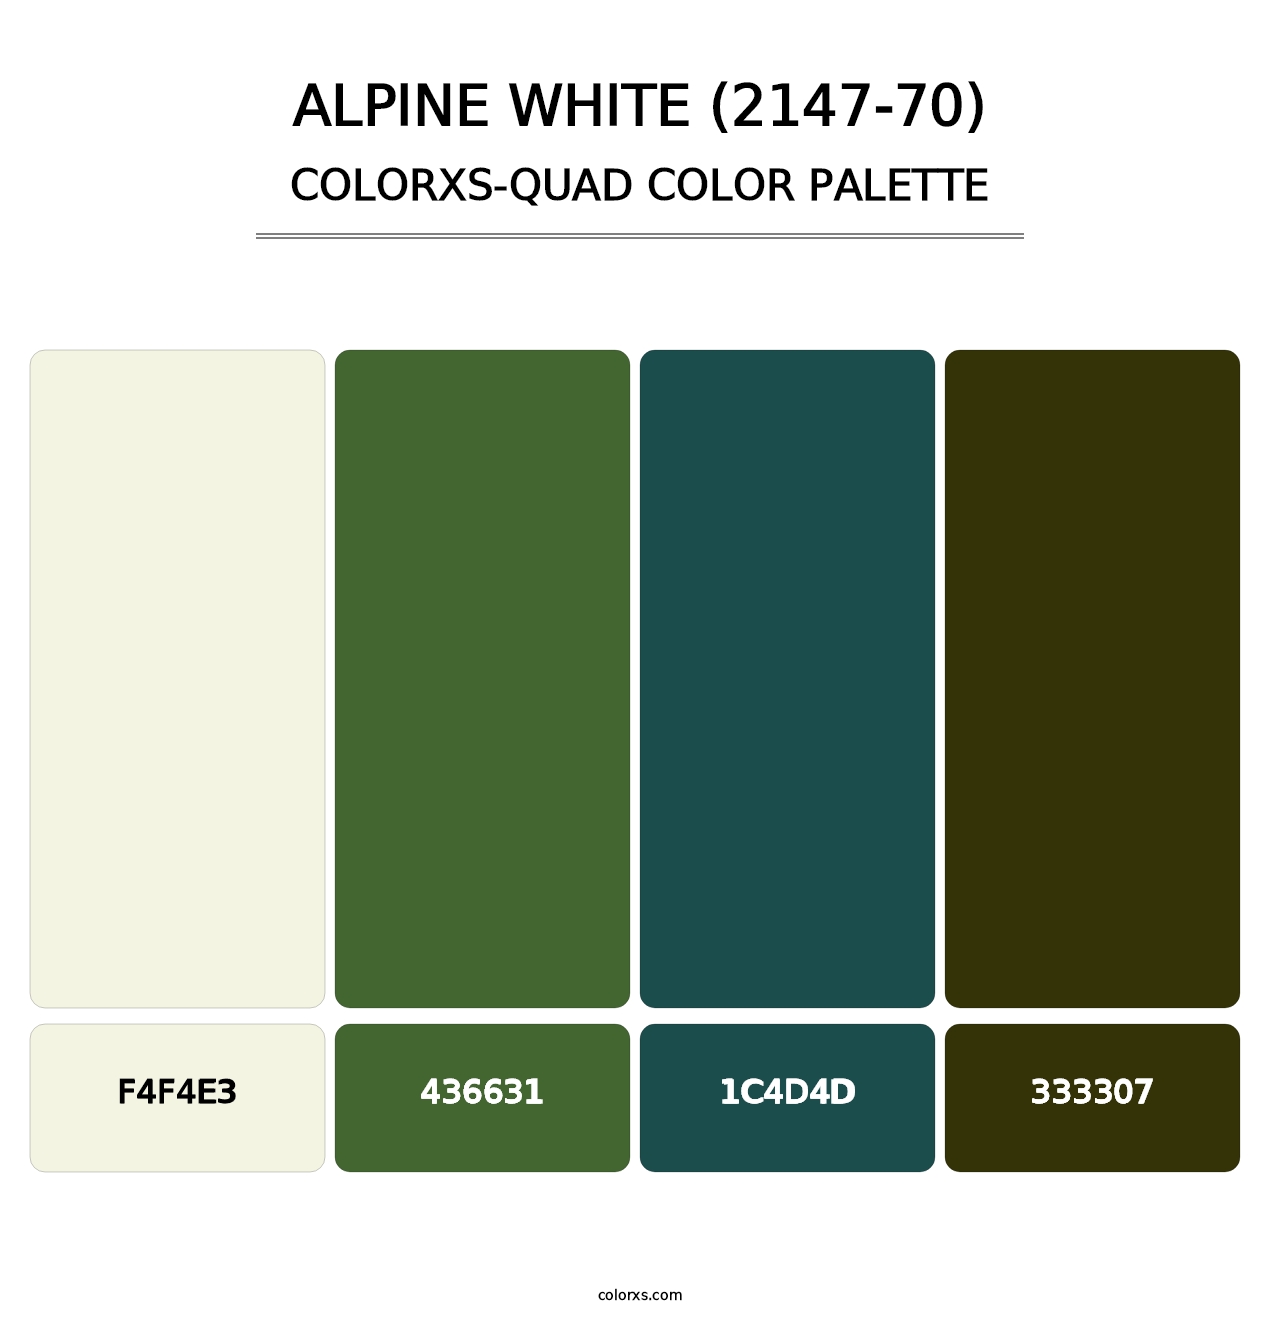 Alpine White (2147-70) - Colorxs Quad Palette